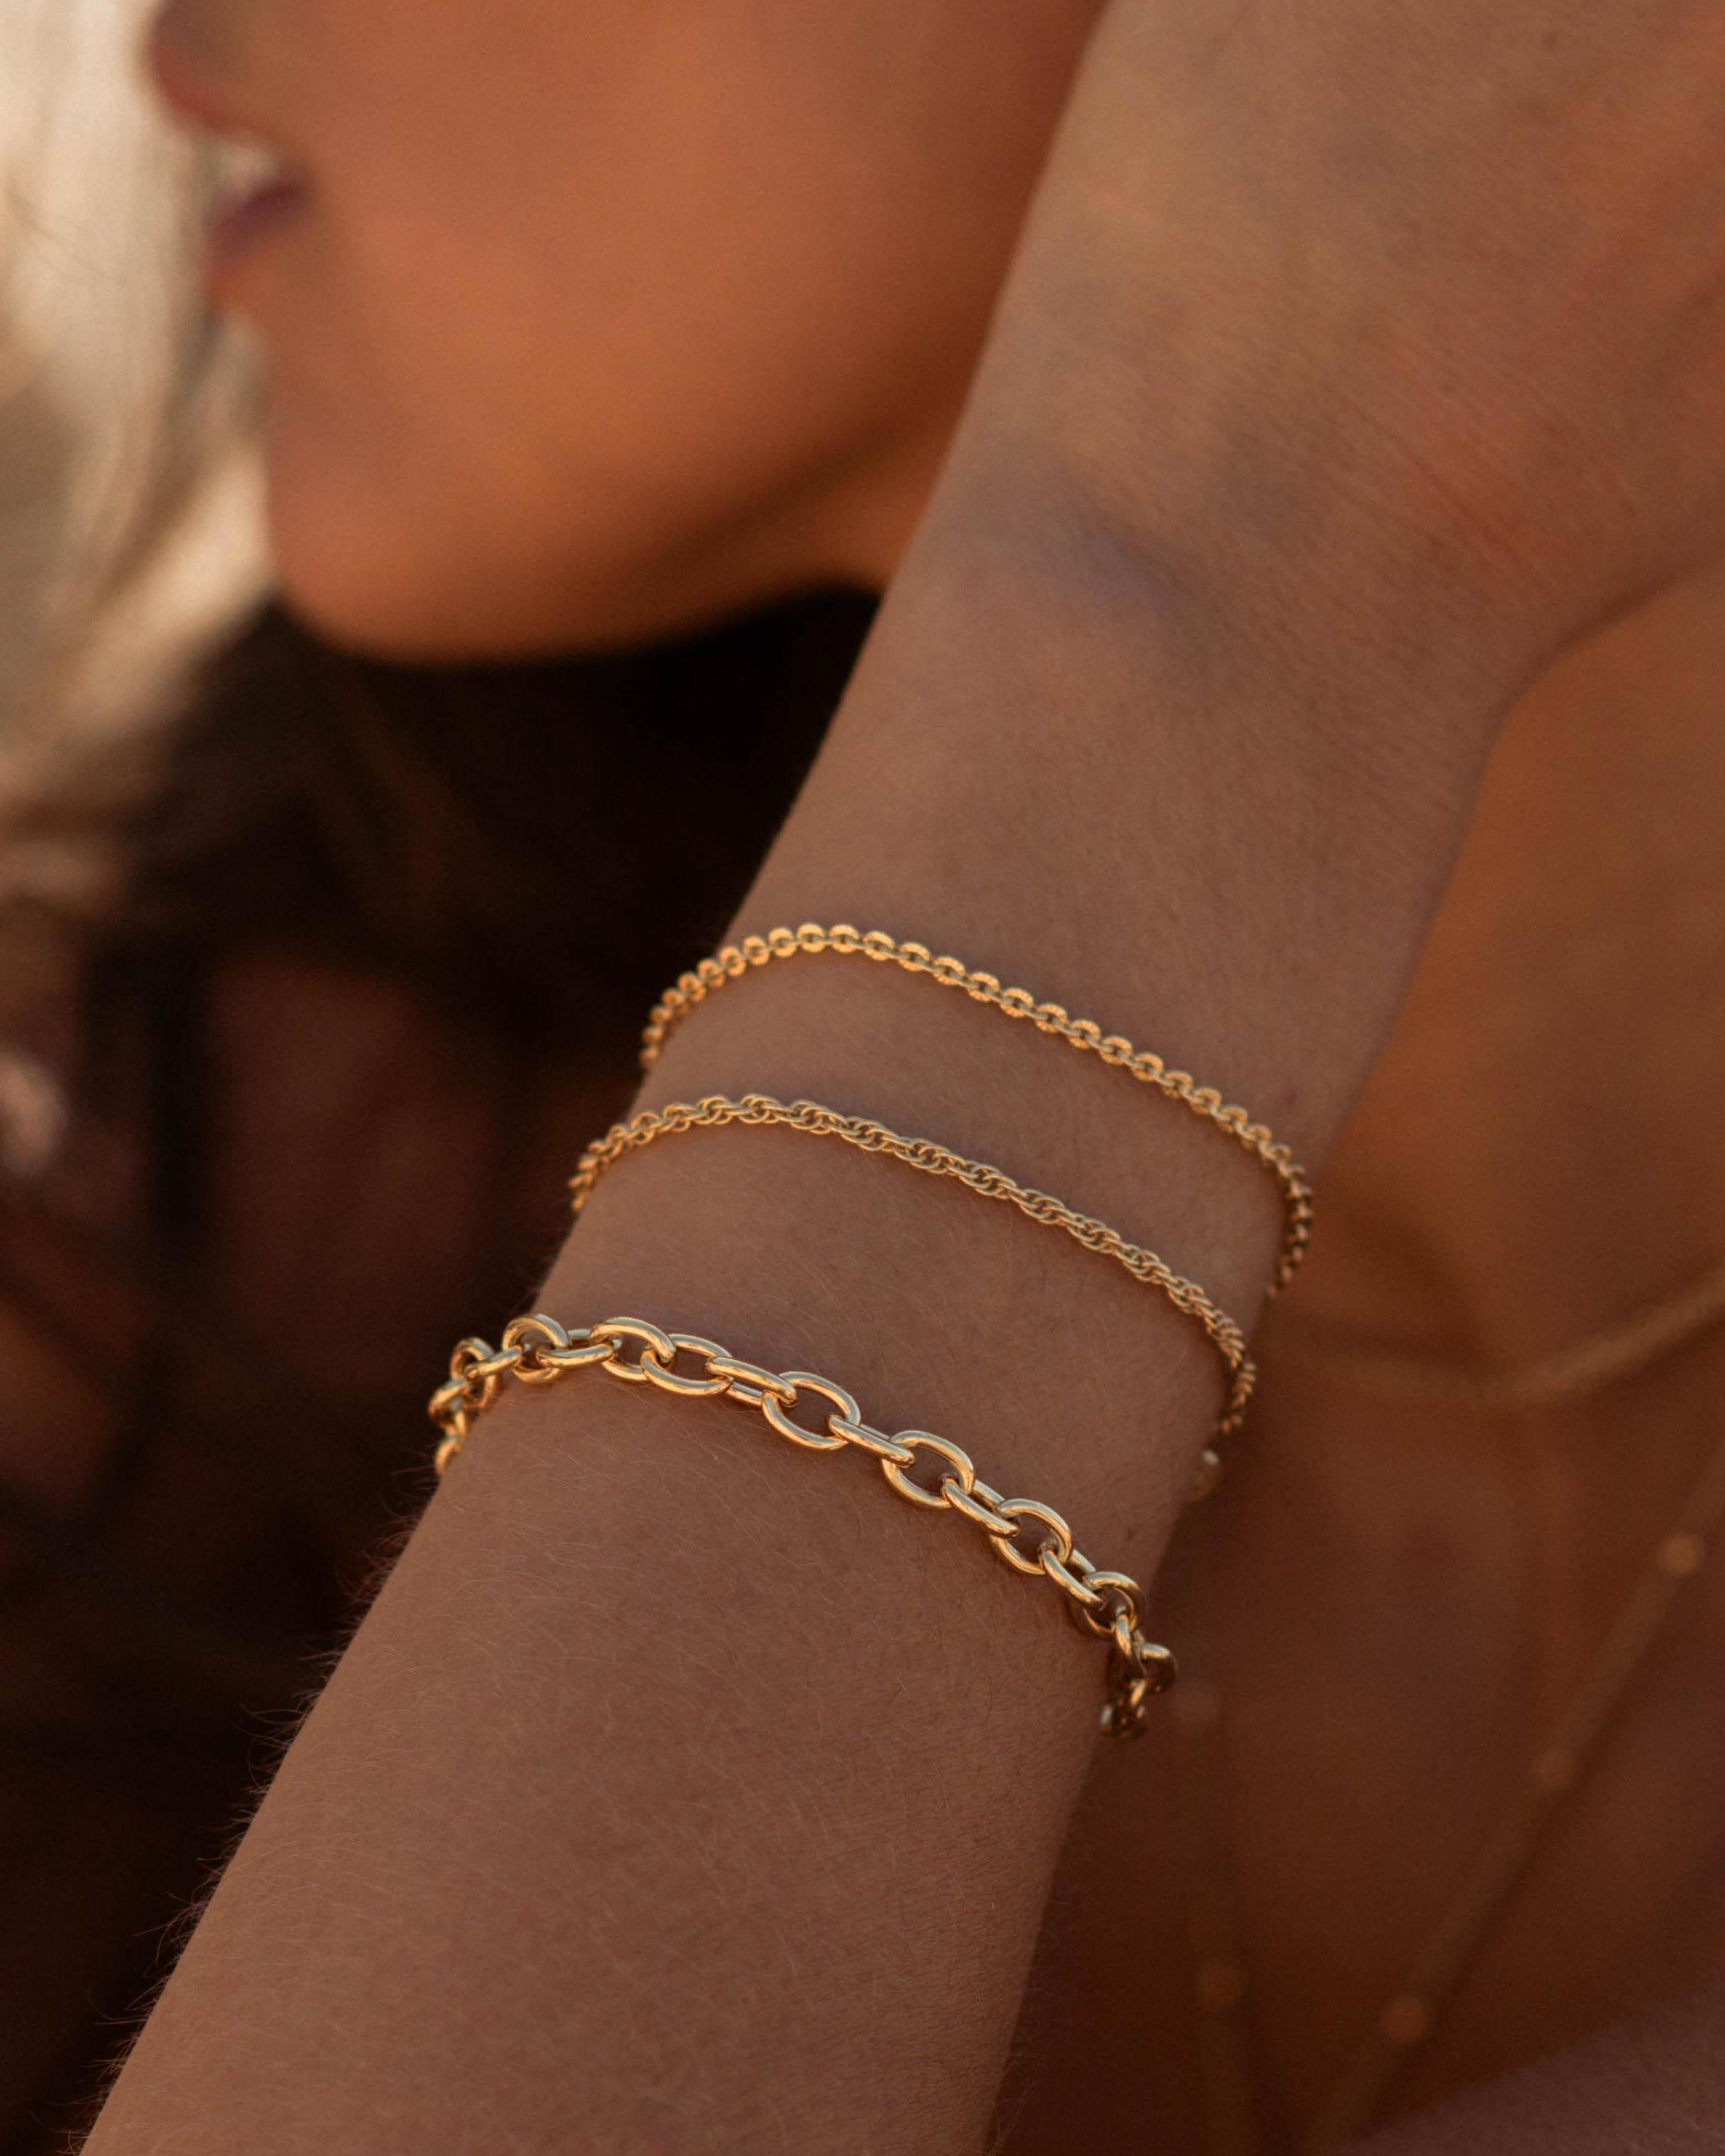 Association de bracelets éthiques en plaqué or 3 microns composées d'un bracelet fin en maille soleil, d'un bracelet fin en maille corde et d'un bracelet large en maille ovale made in France.